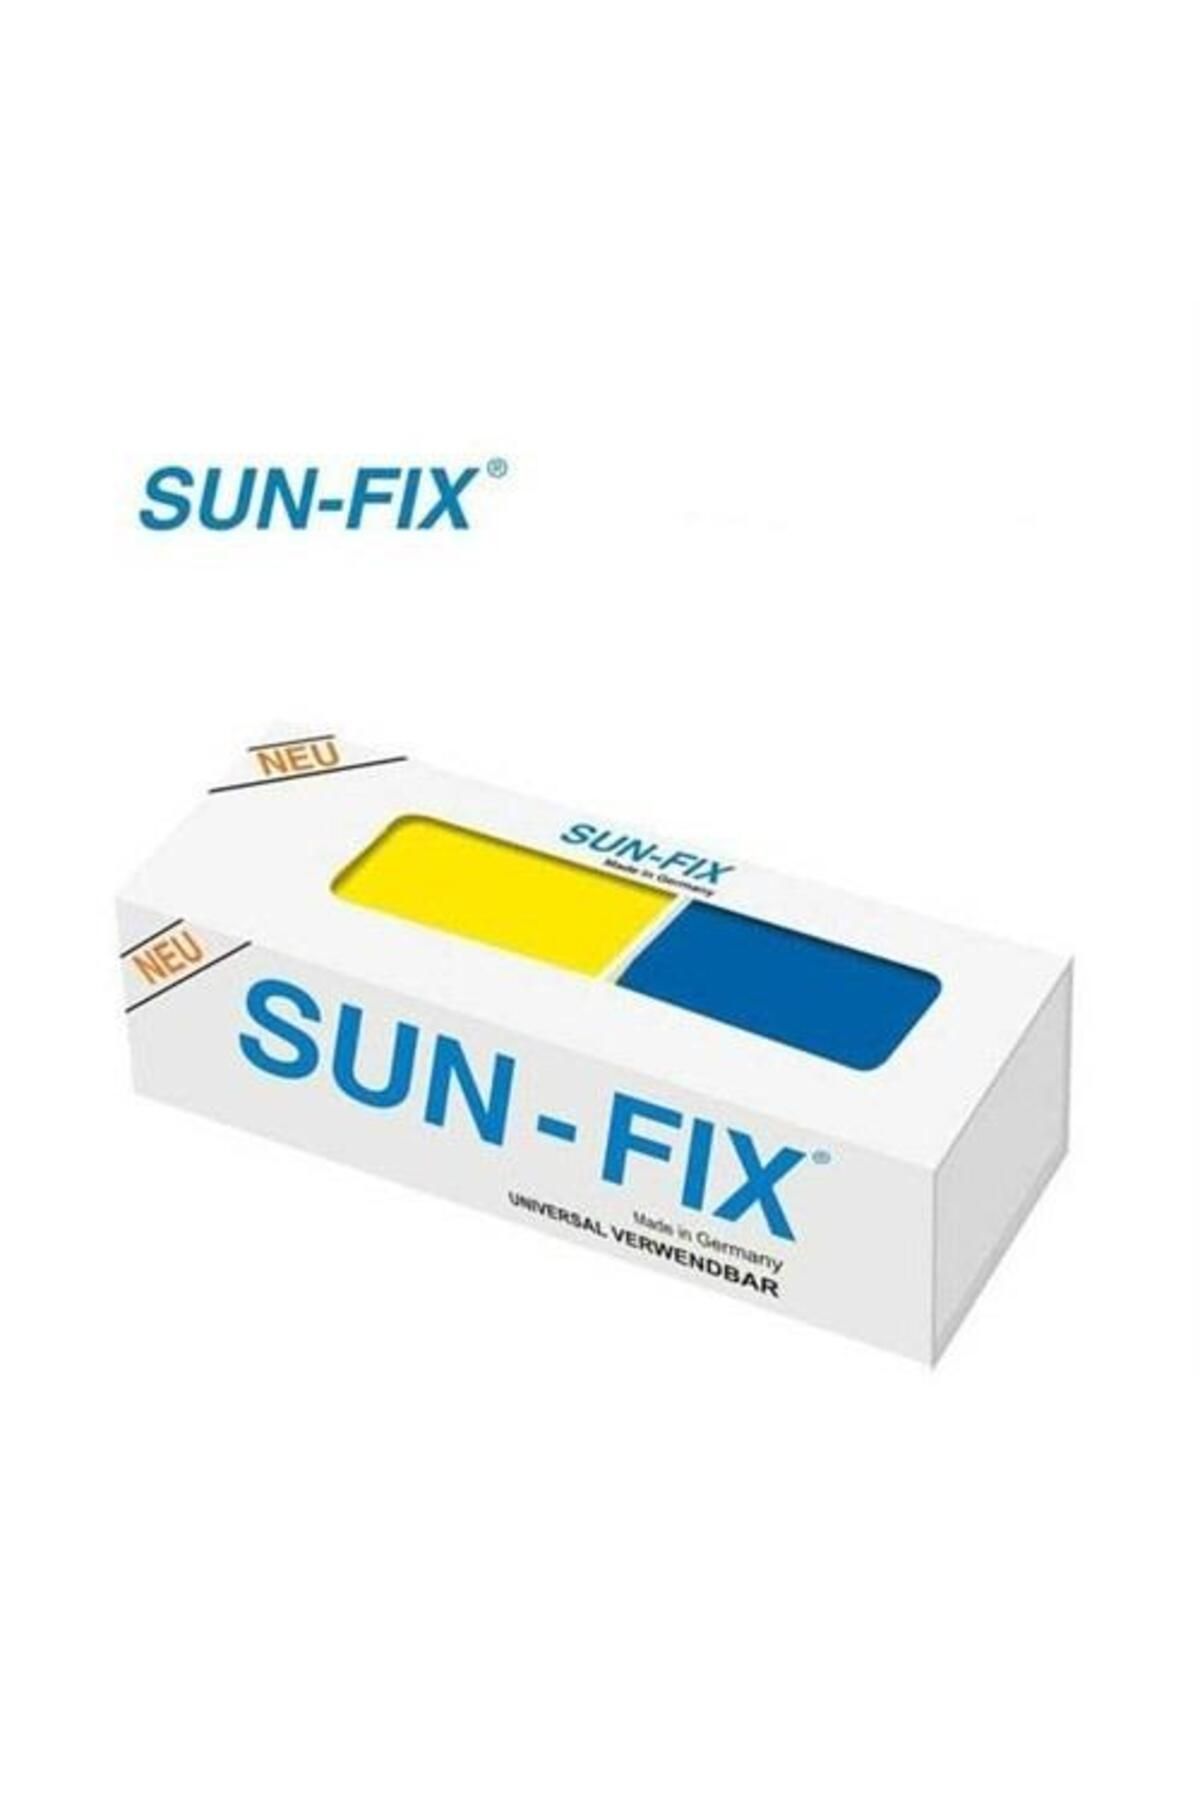 Sun-Fix Sunfix Sun-fix Universal Kaynak Macun Yapıştırıcı 40gr